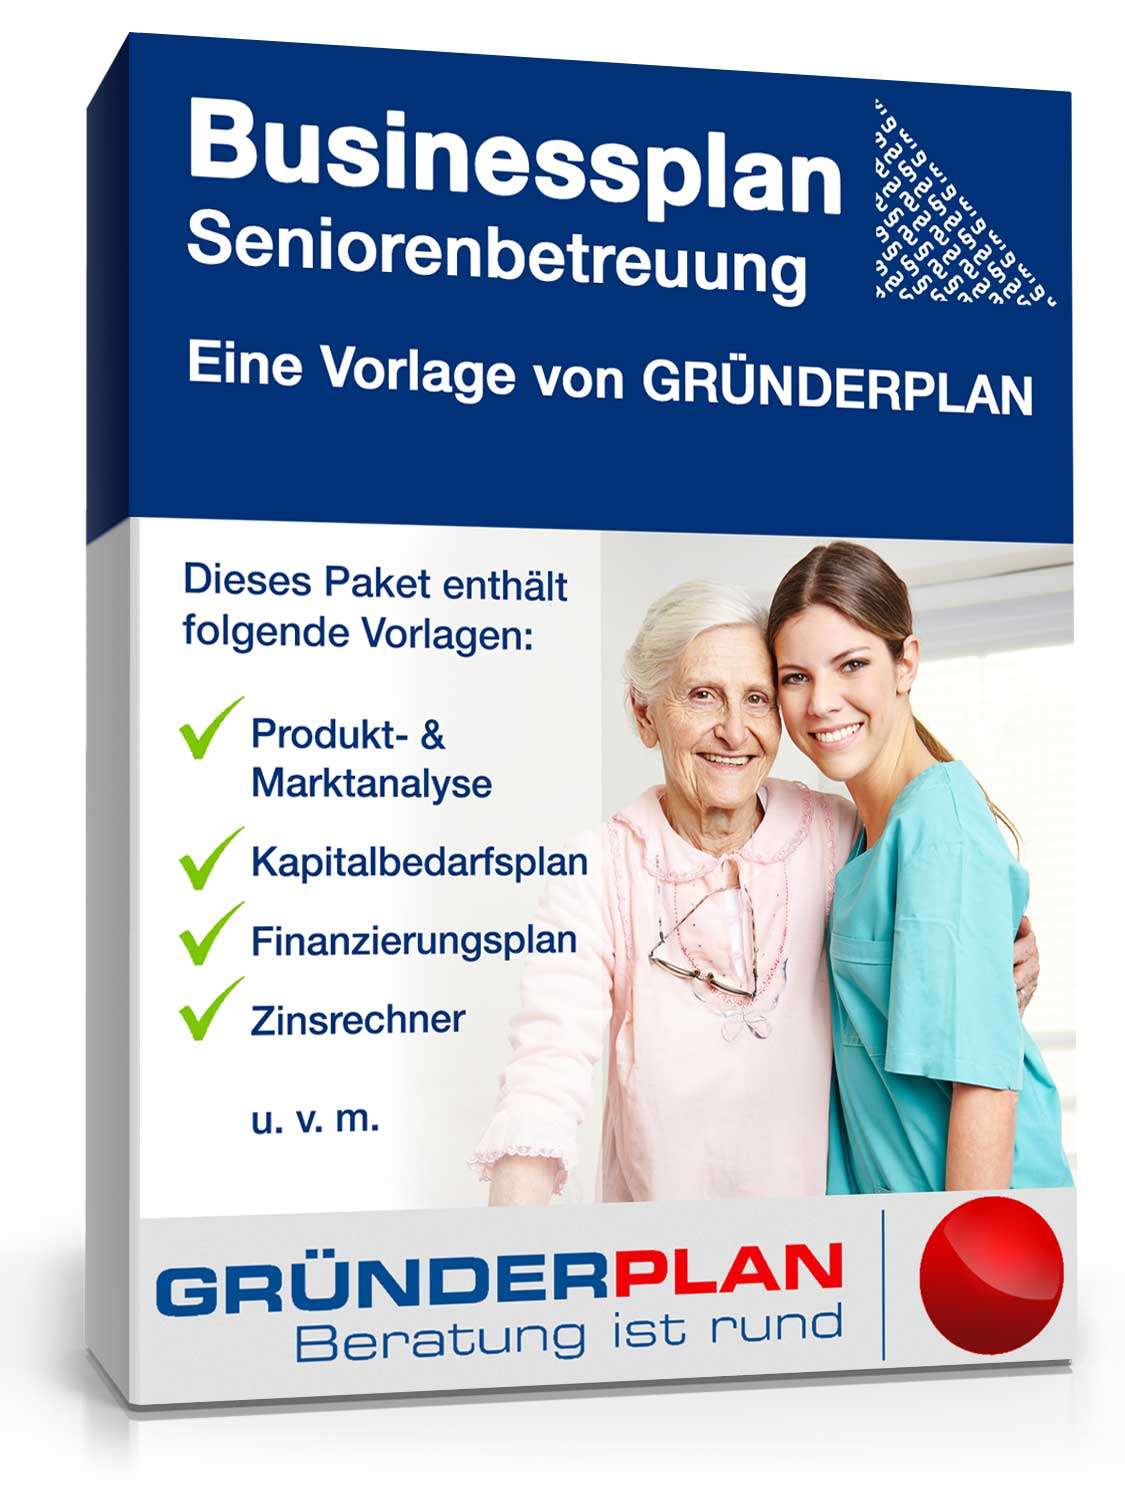 Hauptbild des Produkts: Businessplan Seniorenbetreuung von Gründerplan